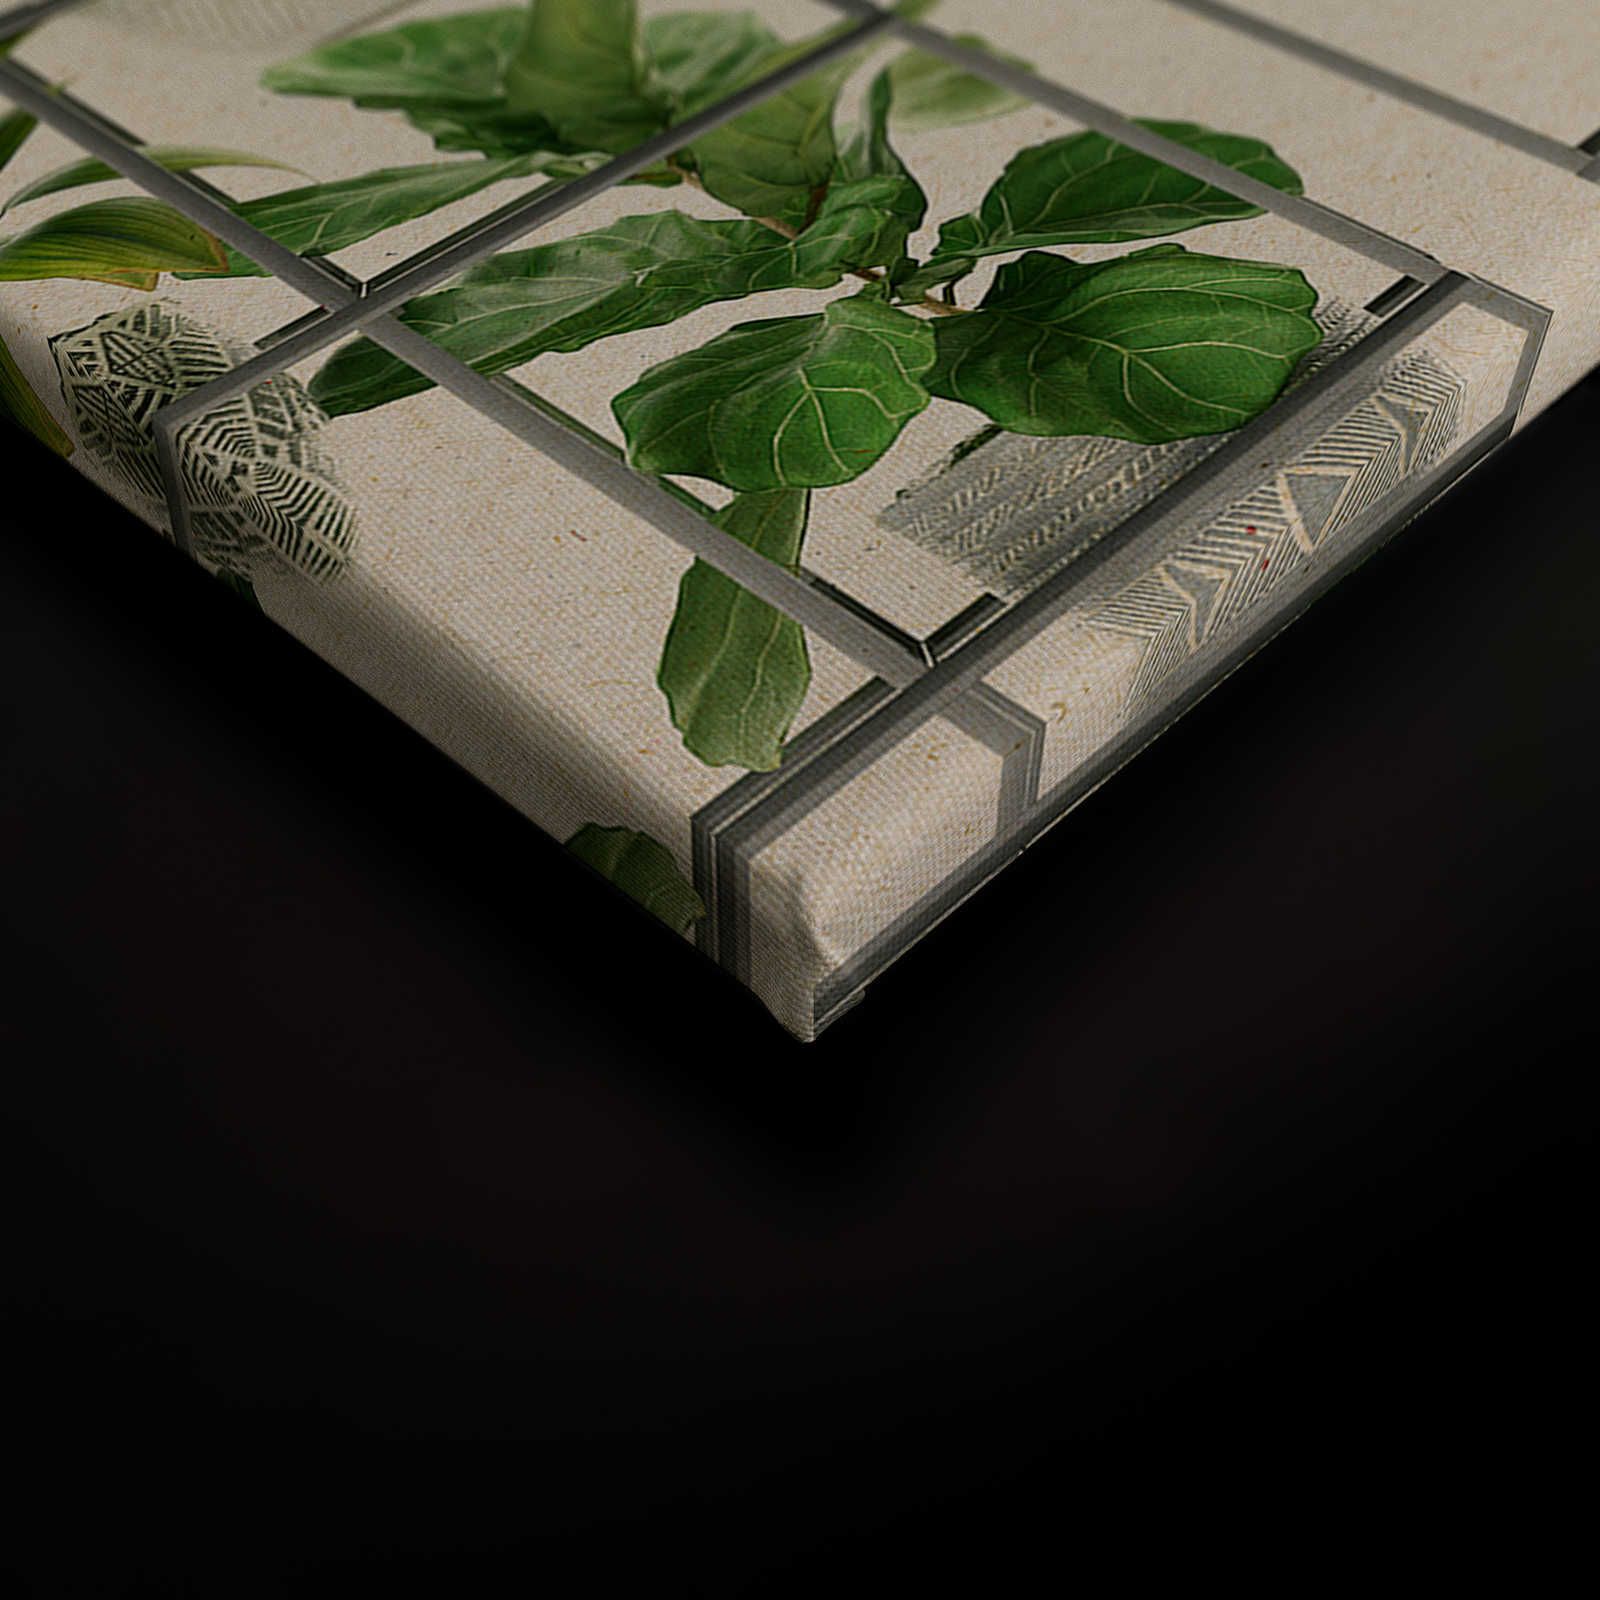             Plant Shop 2 - Quadro su tela con piante moderne in verde e grigio - 0,90 m x 0,60 m
        